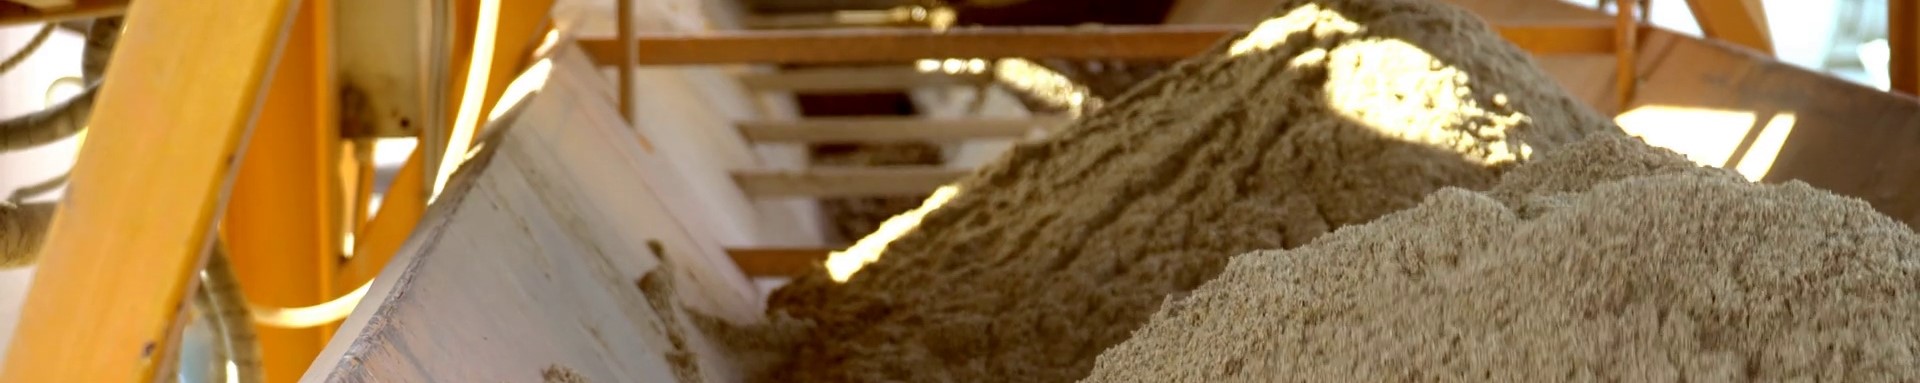 Песок для бетона: какой брать